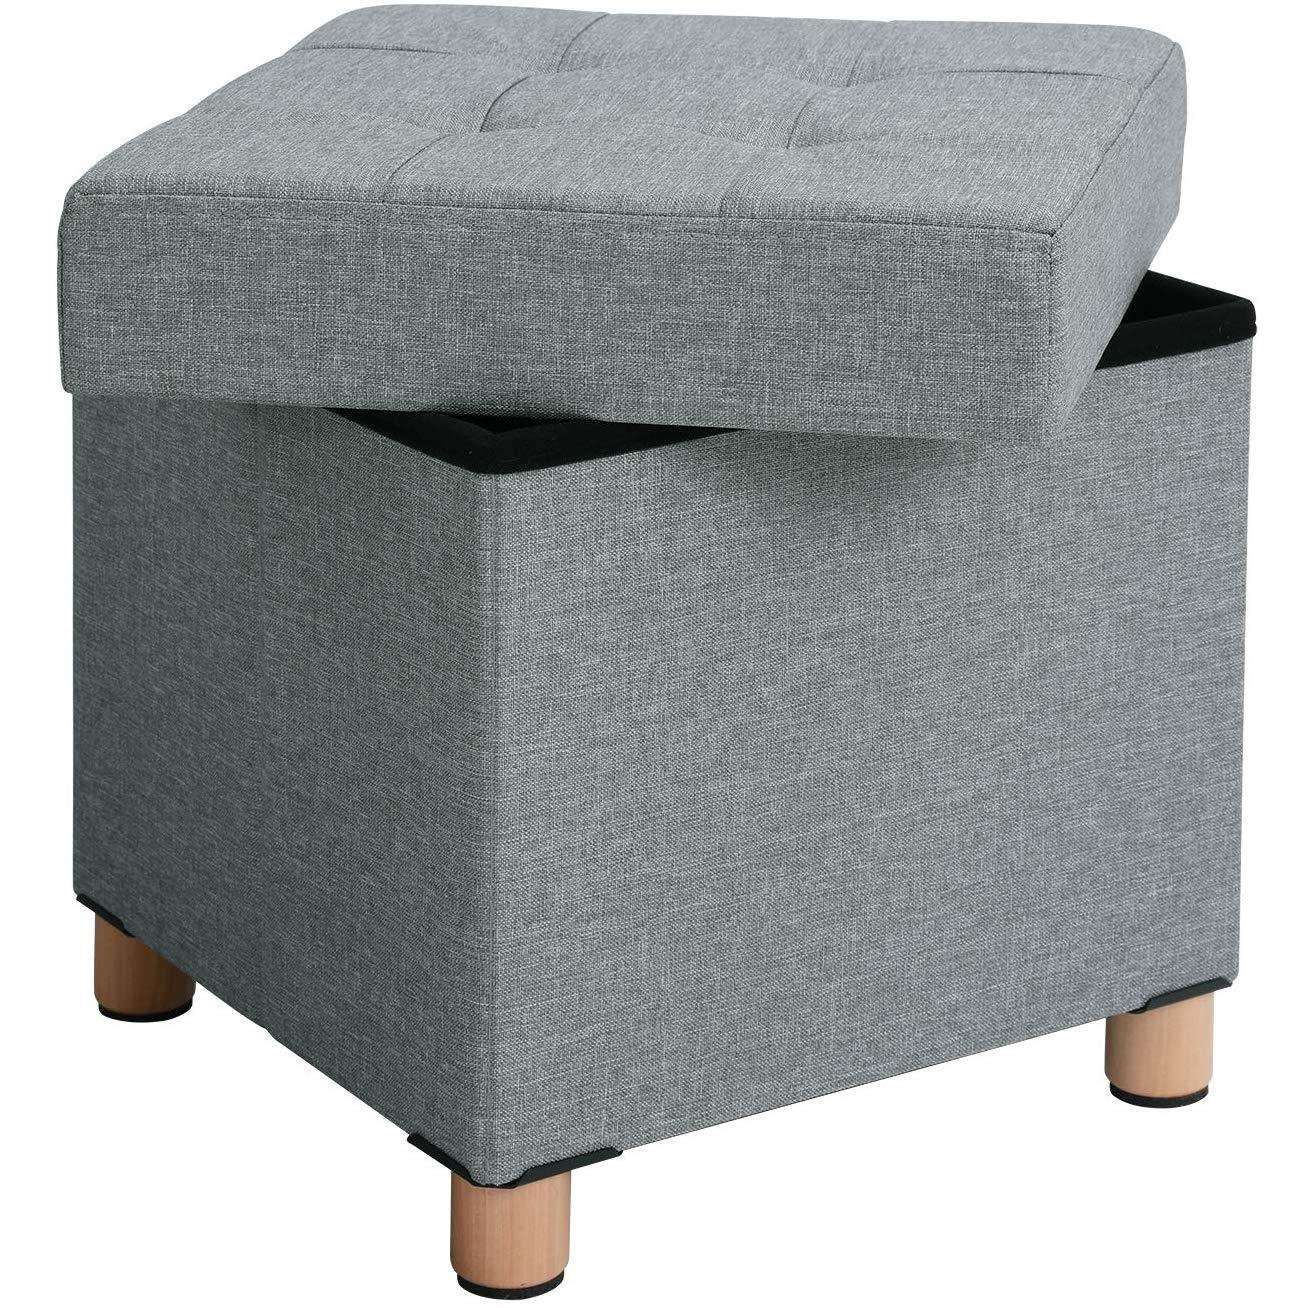 Nancy's Hocker - Stool With Storage - Pouf - Gray Seating Chair With Storage - 38 x 40 x 38 cm (W / H / D)